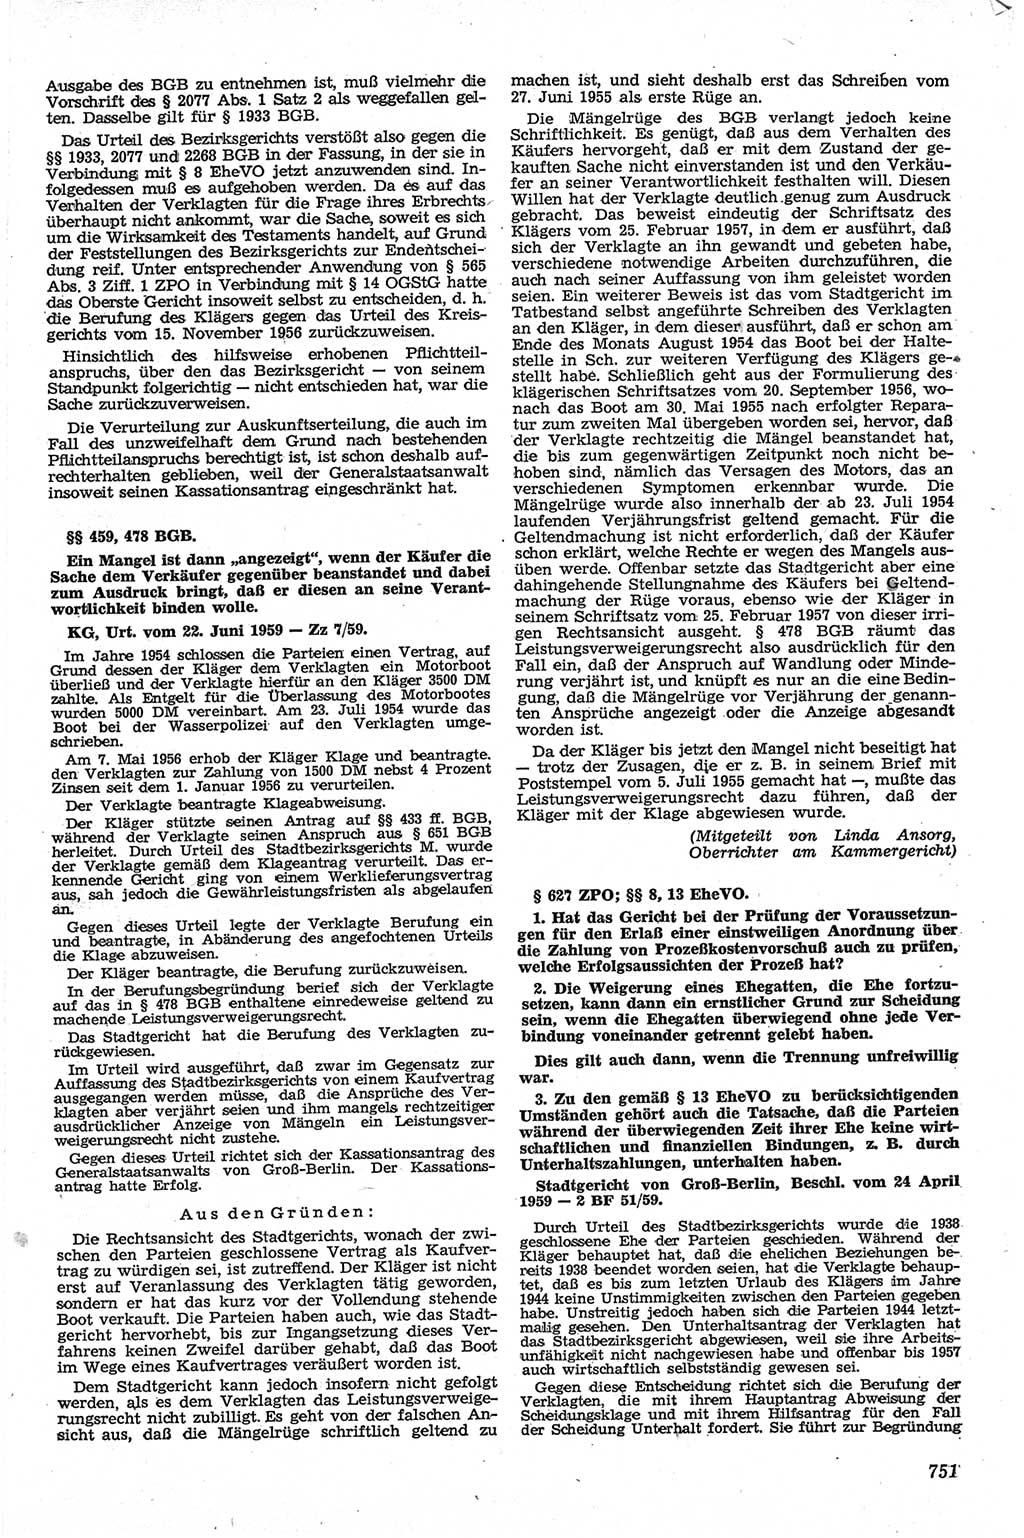 Neue Justiz (NJ), Zeitschrift für Recht und Rechtswissenschaft [Deutsche Demokratische Republik (DDR)], 13. Jahrgang 1959, Seite 751 (NJ DDR 1959, S. 751)